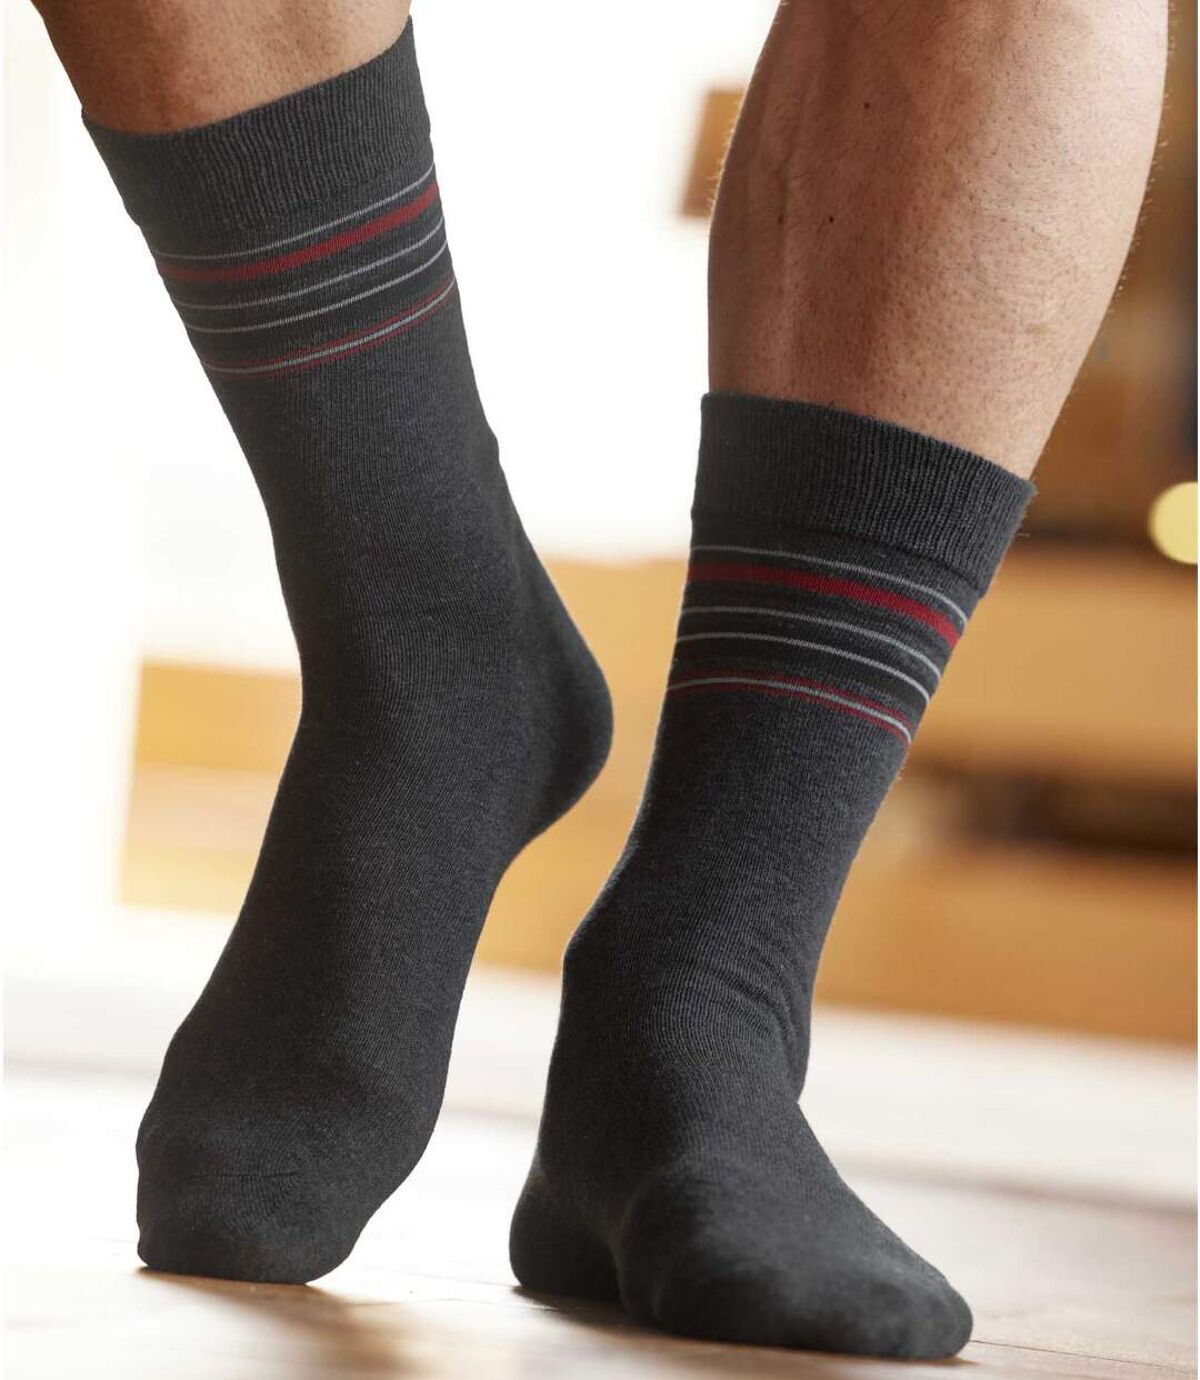 Pack of 4 Pairs of Men's Patterned Socks - Black Gray Blue  Atlas For Men